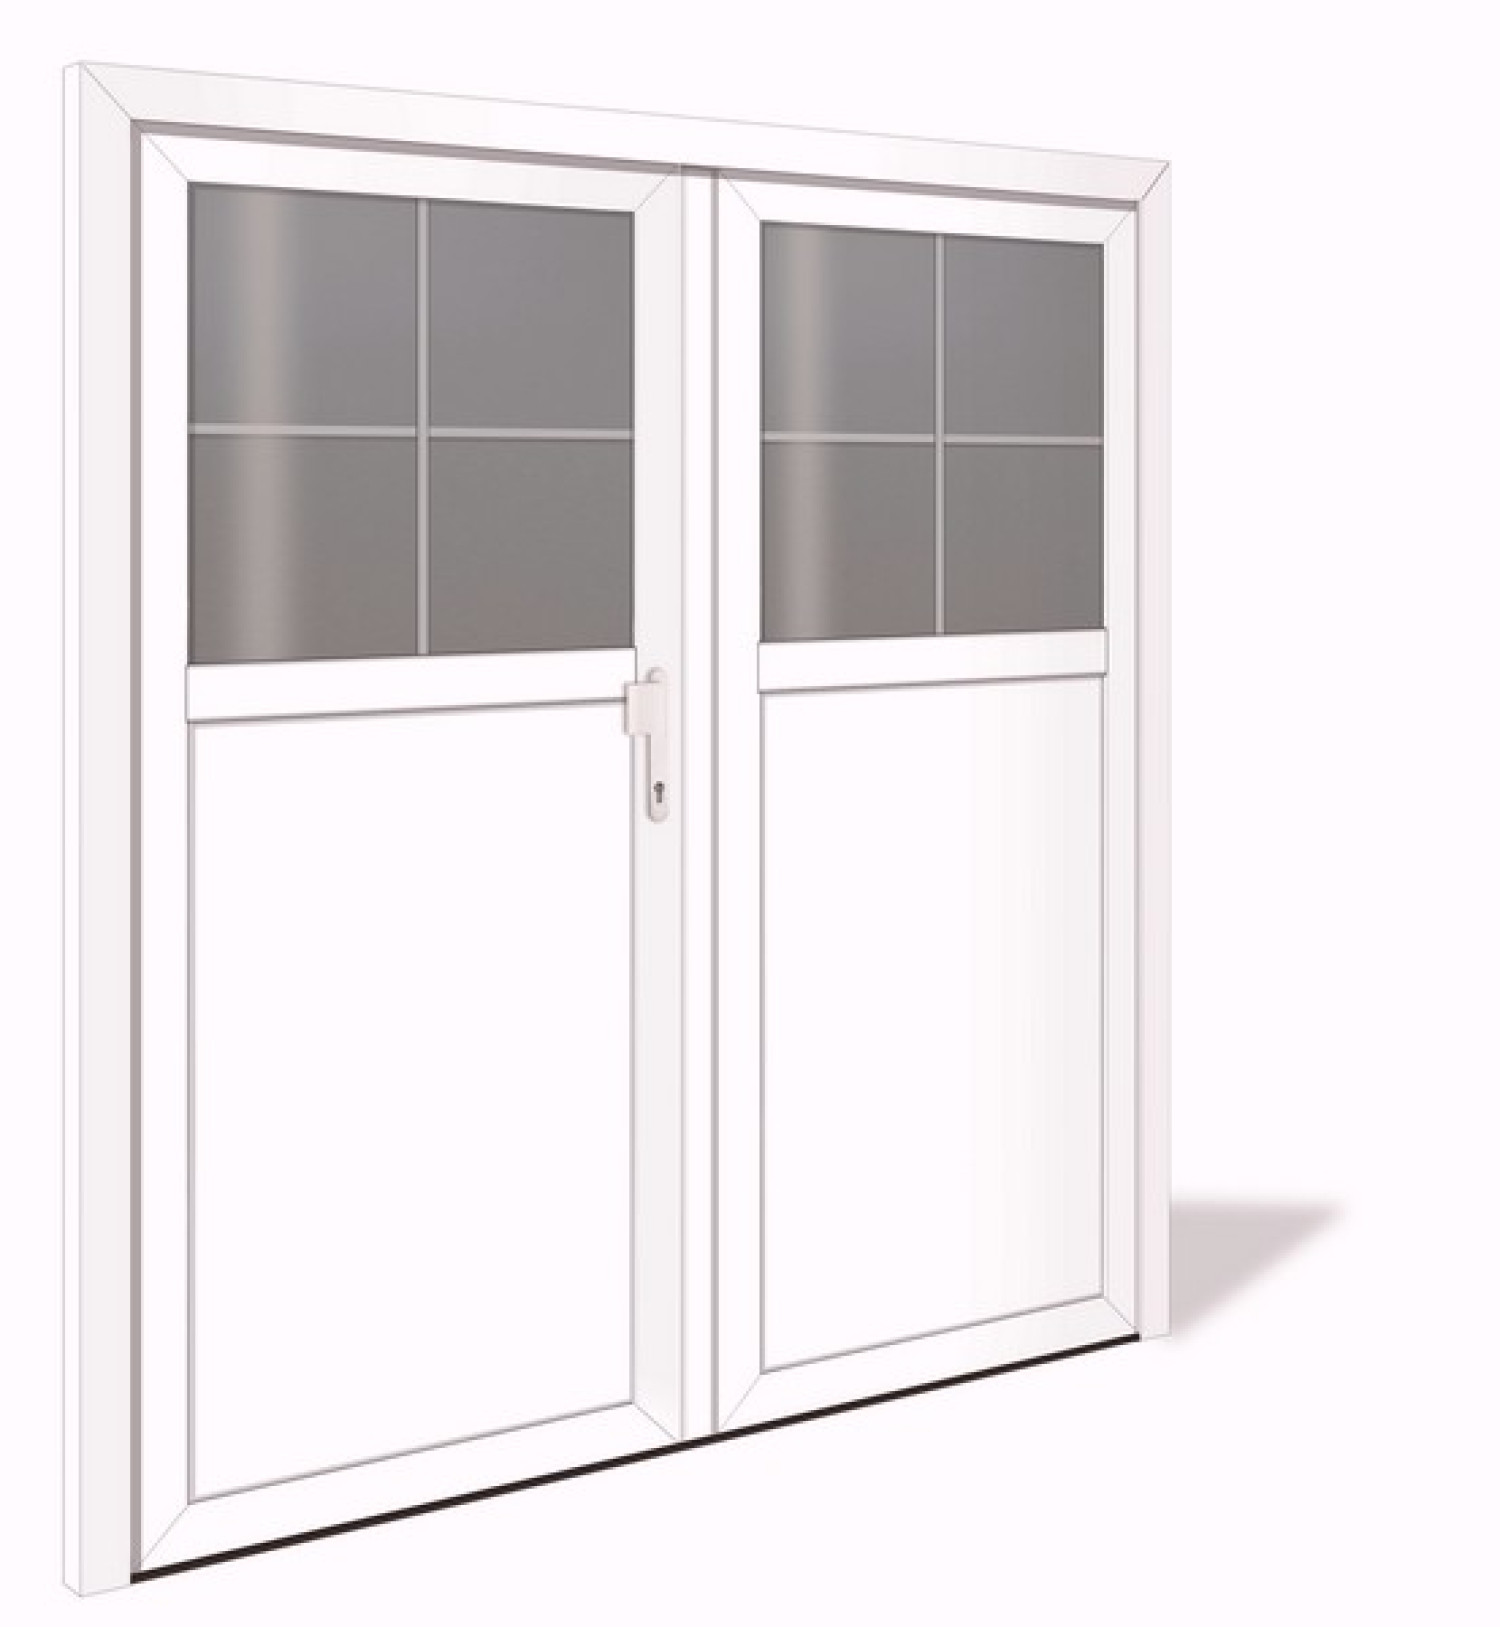 NET 1040-2 Aluminium Doppelflügel Nebeneingangstür mit Glasausschnitt - Interio